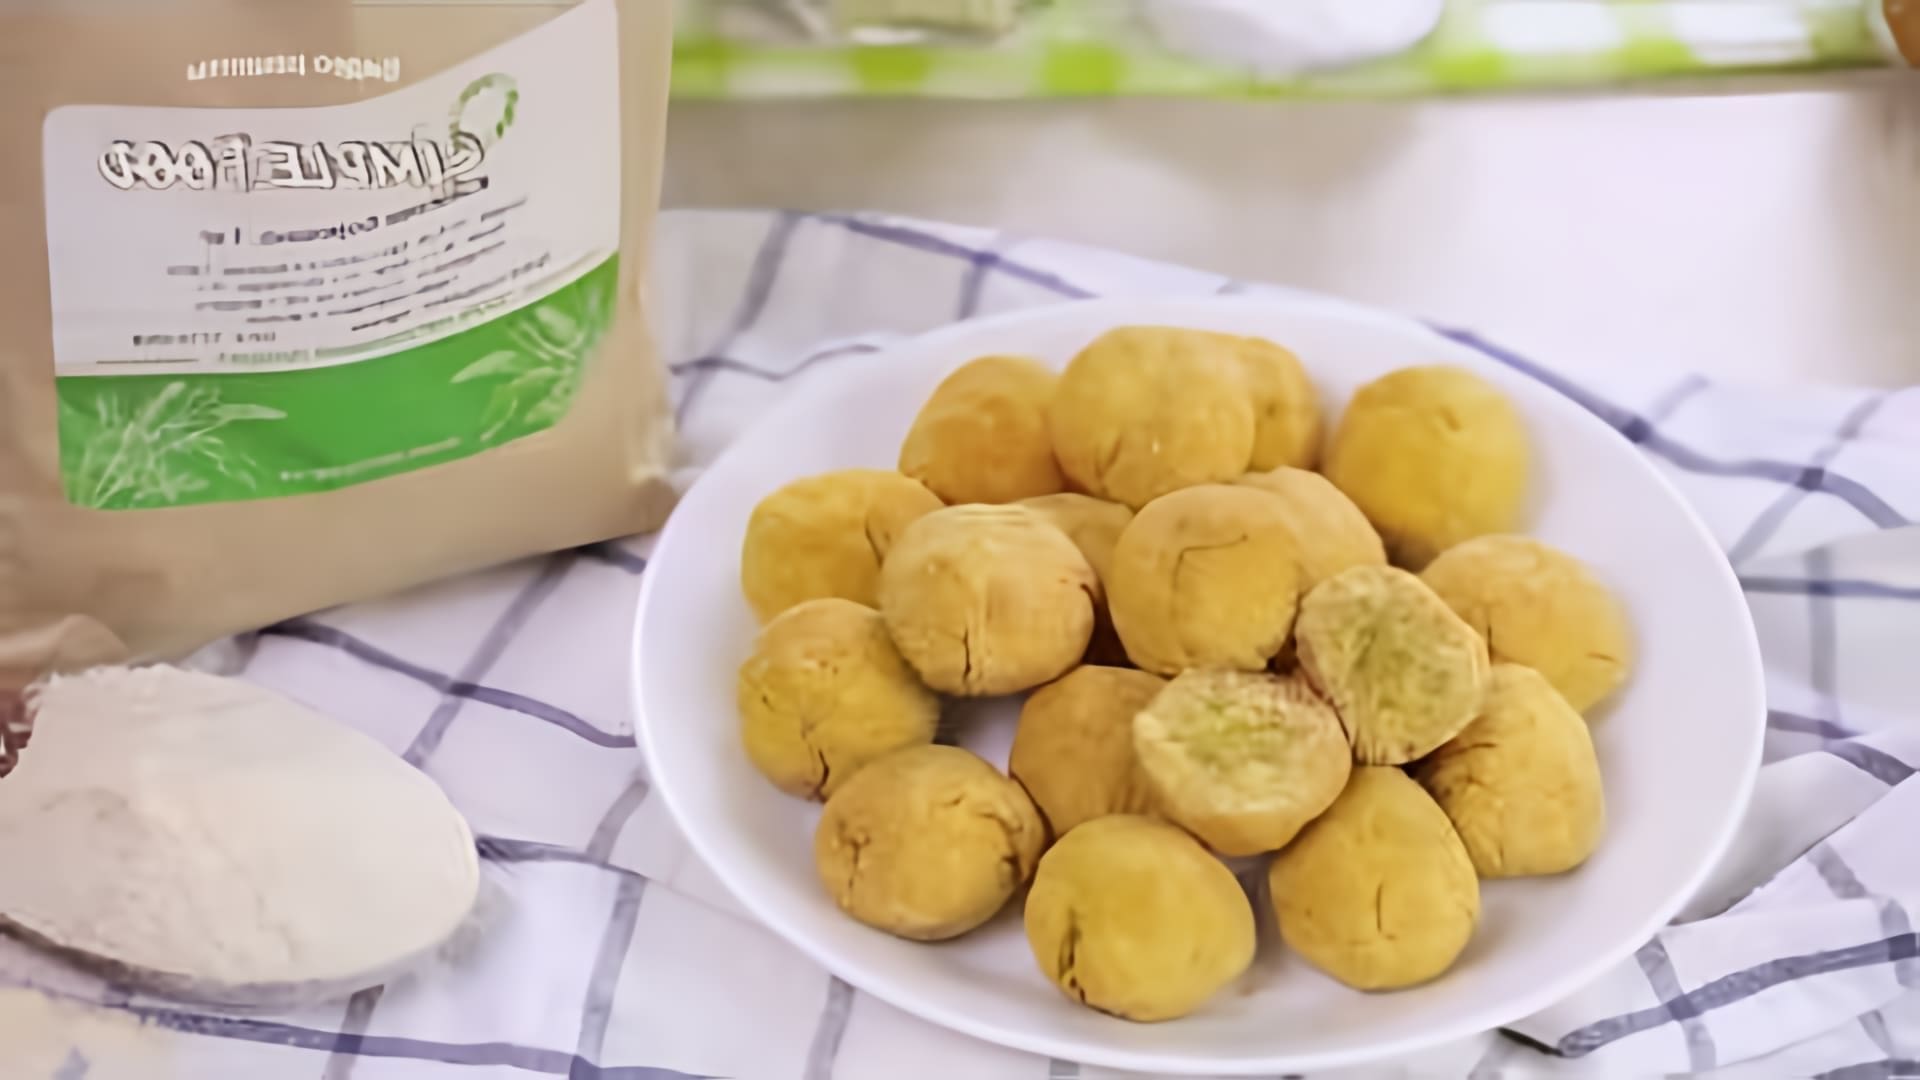 В этом видео демонстрируется рецепт приготовления кокосового печенья без глютена и сахара